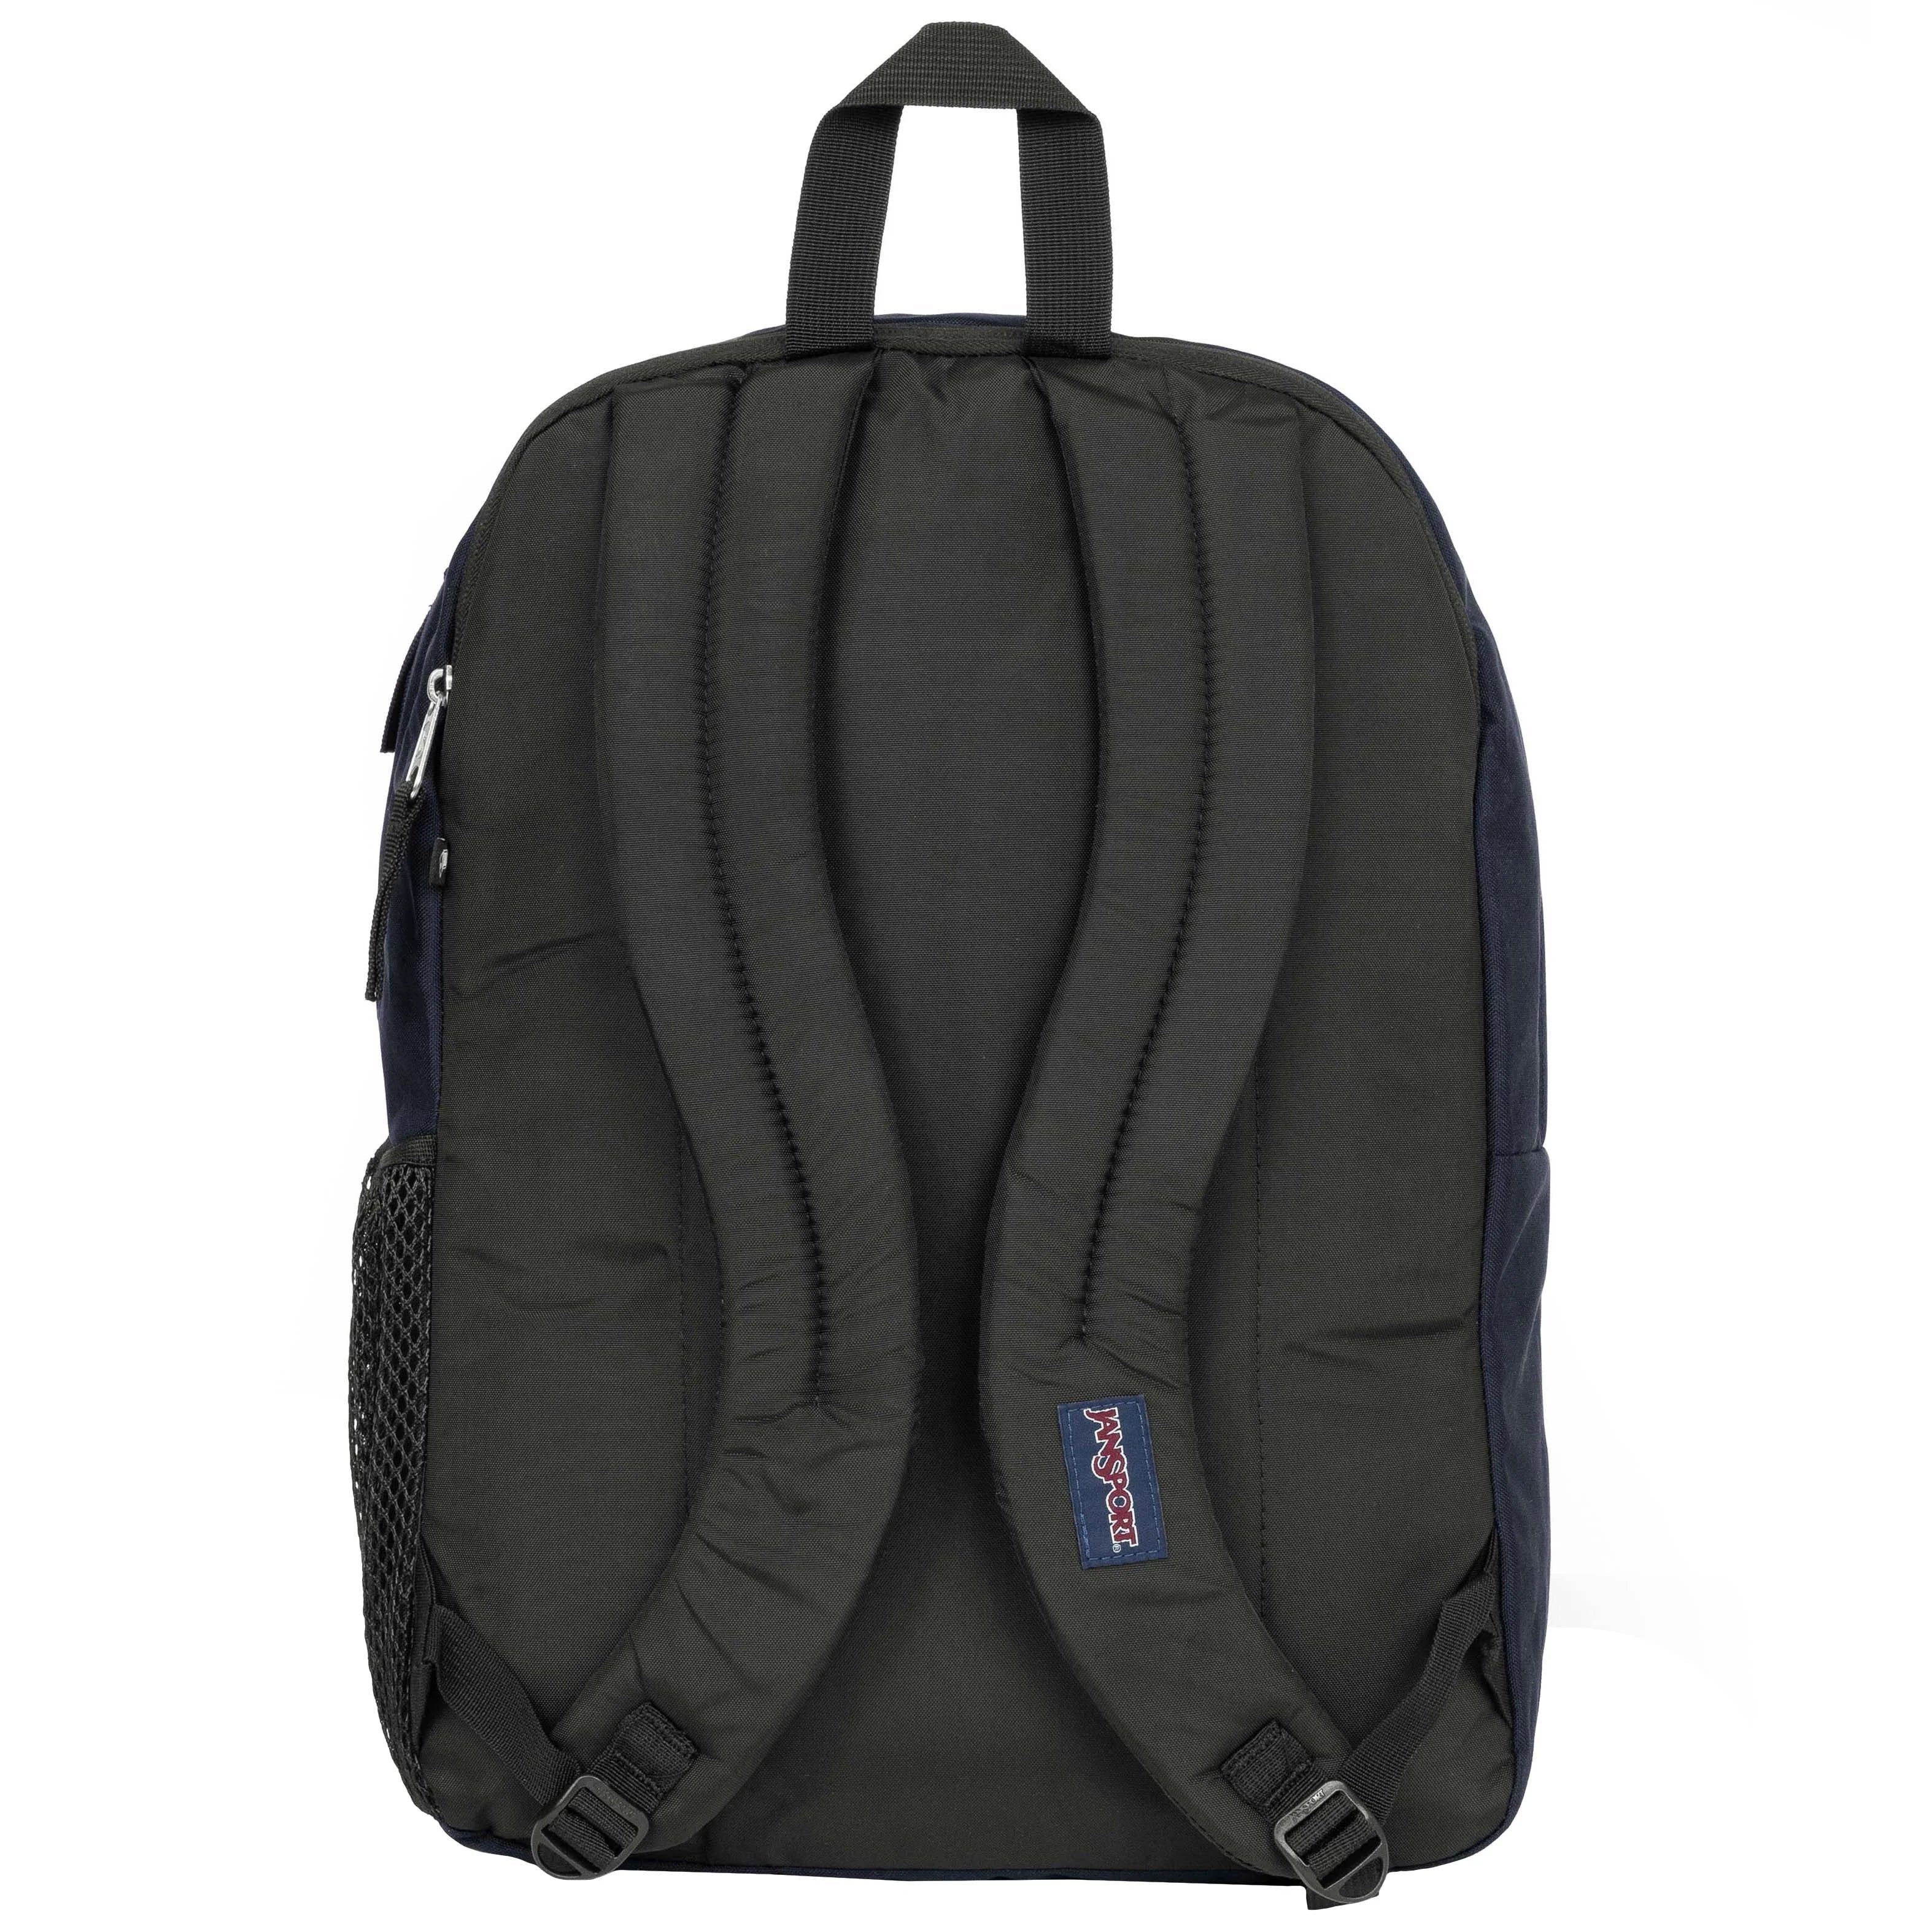 Jansport Big Student Backpack 43 cm - Graphite Grey